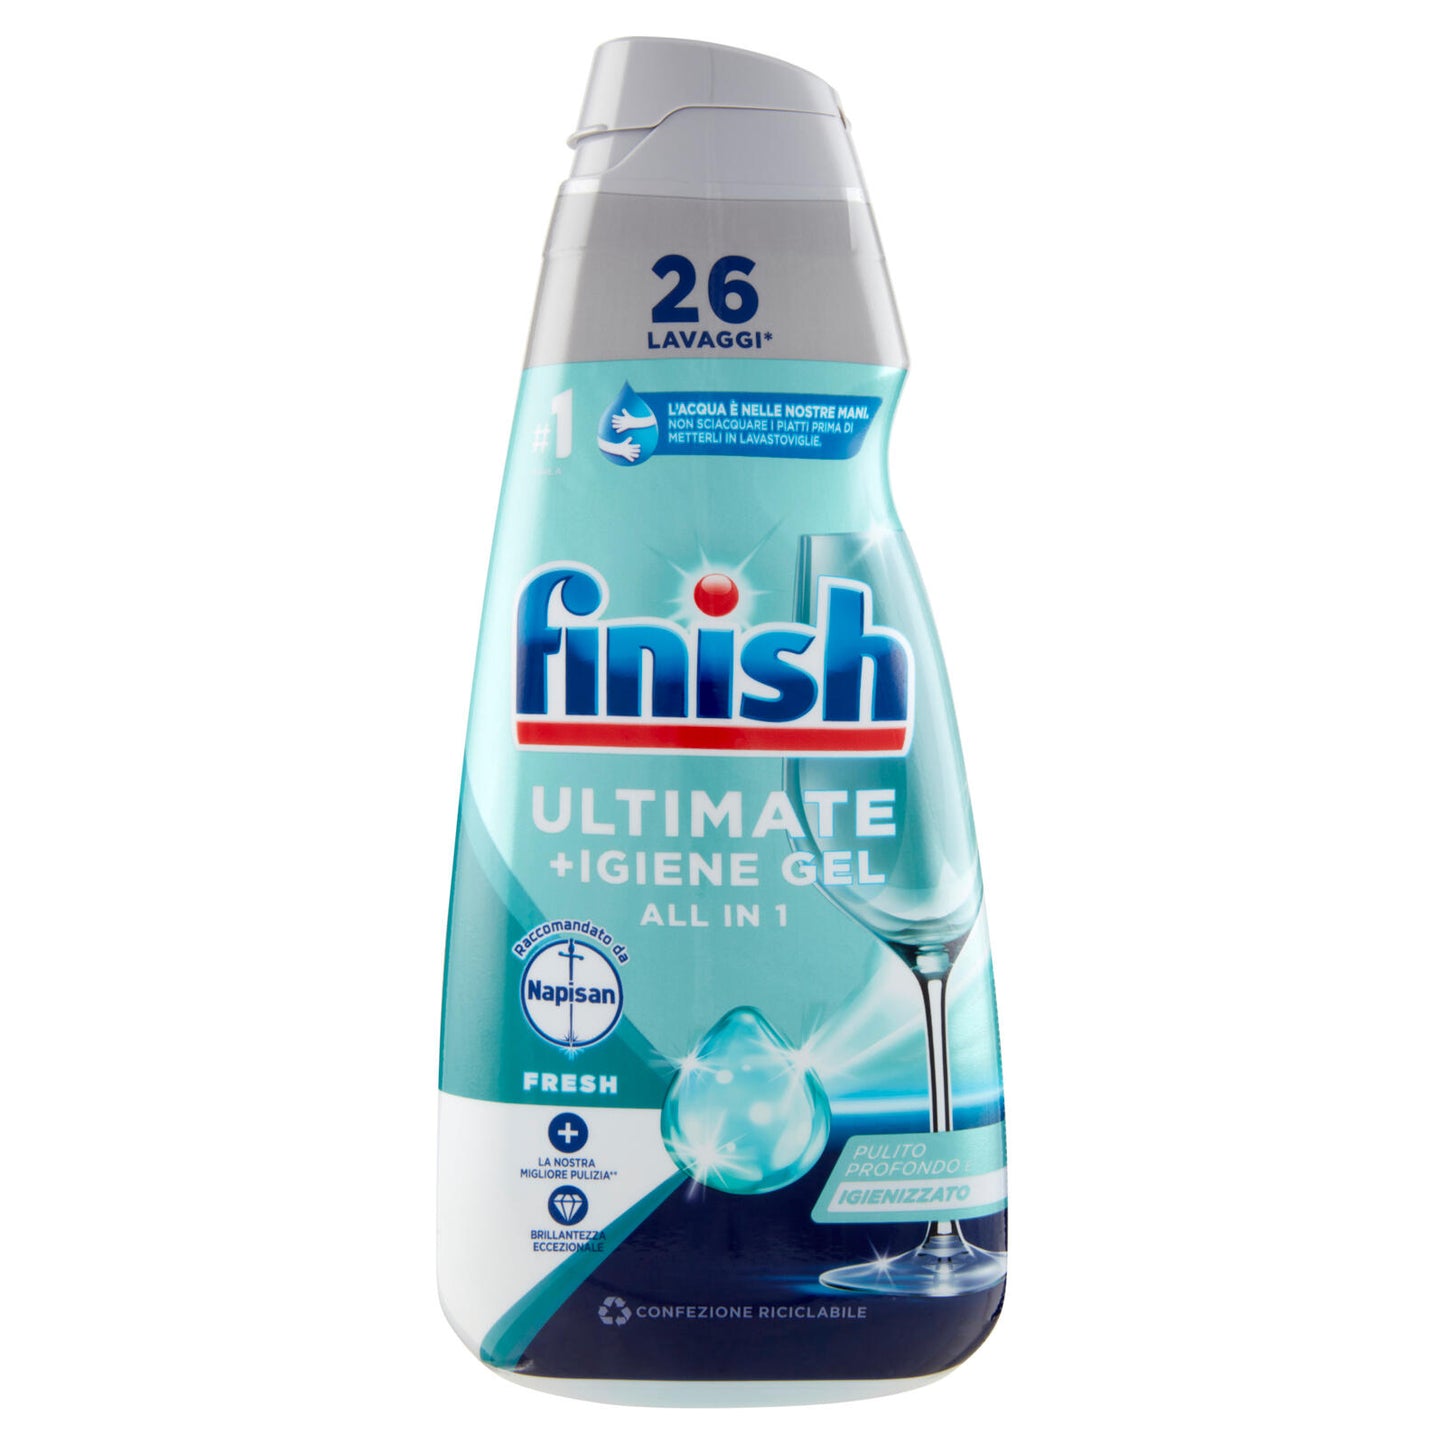 Finish Ultimate + Igiene Gel Napisan Regular liquido lavastoviglie